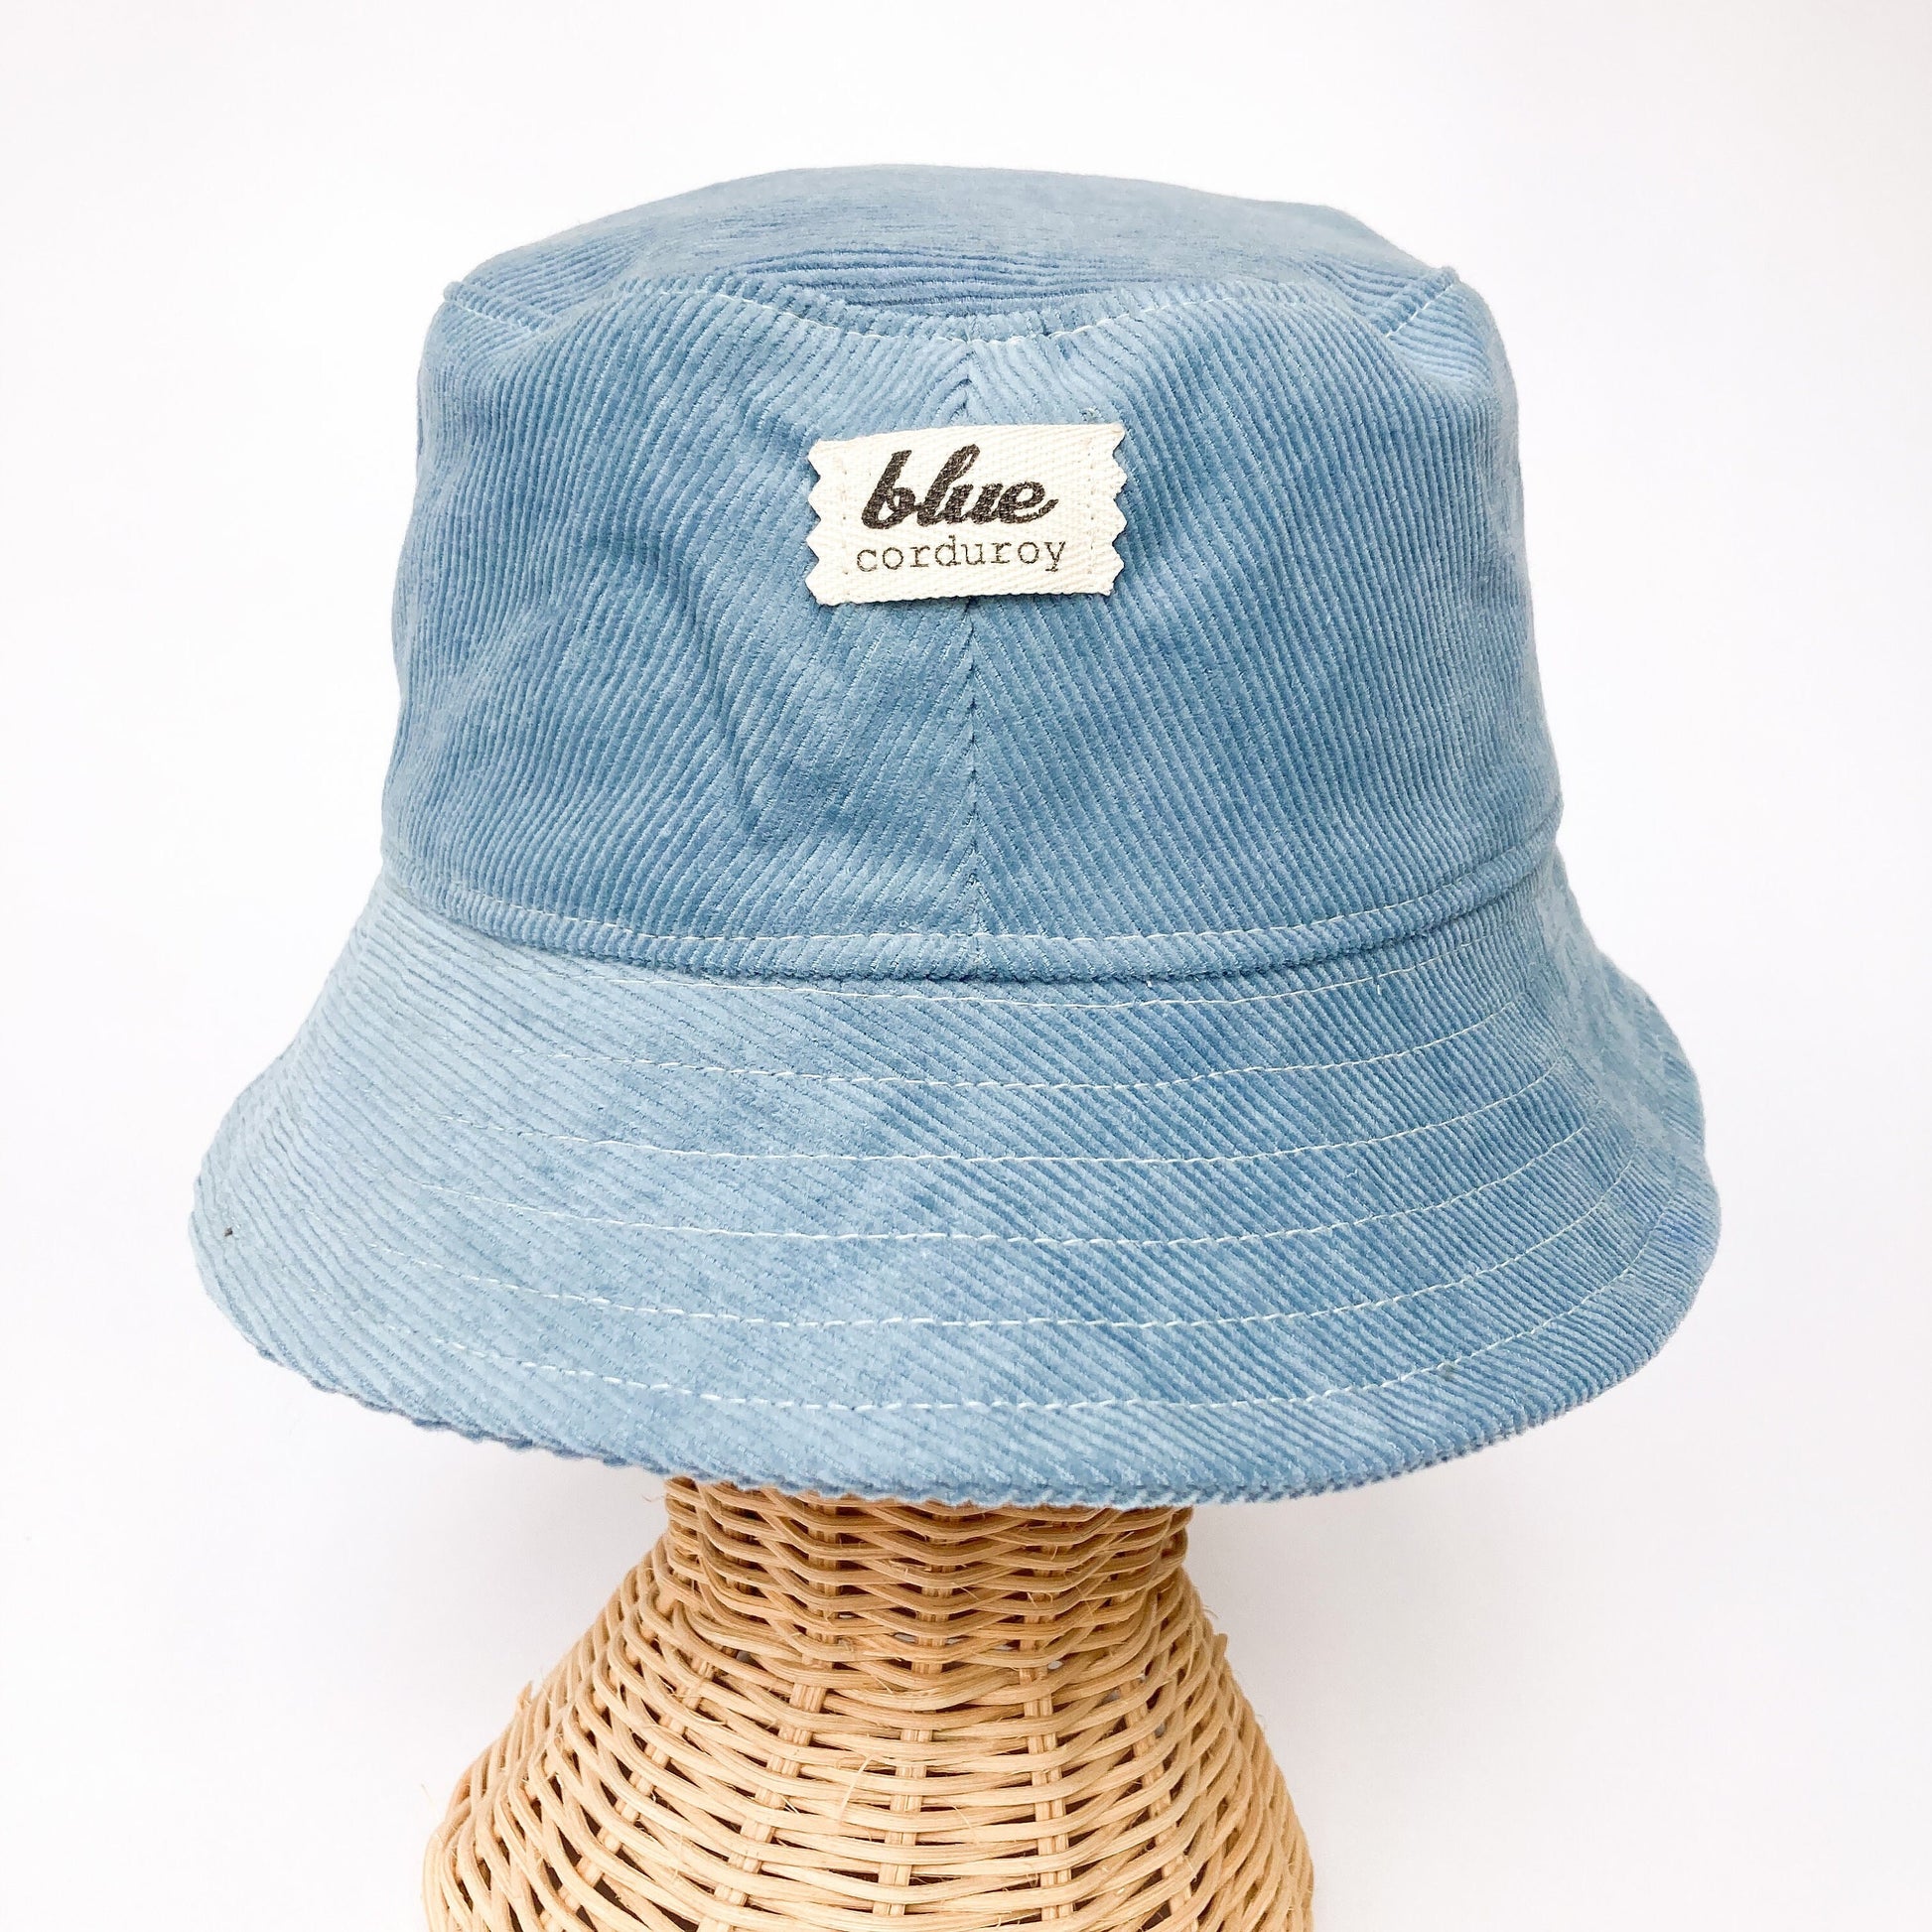 Baby Bucket Hat, Blue Corduroy Hat, Sun Hat for Boy, Toddler Bucket Hat, Baby Summer Hat, Floppy Beach Hat, Summer Baby Gift, Newborn Cap